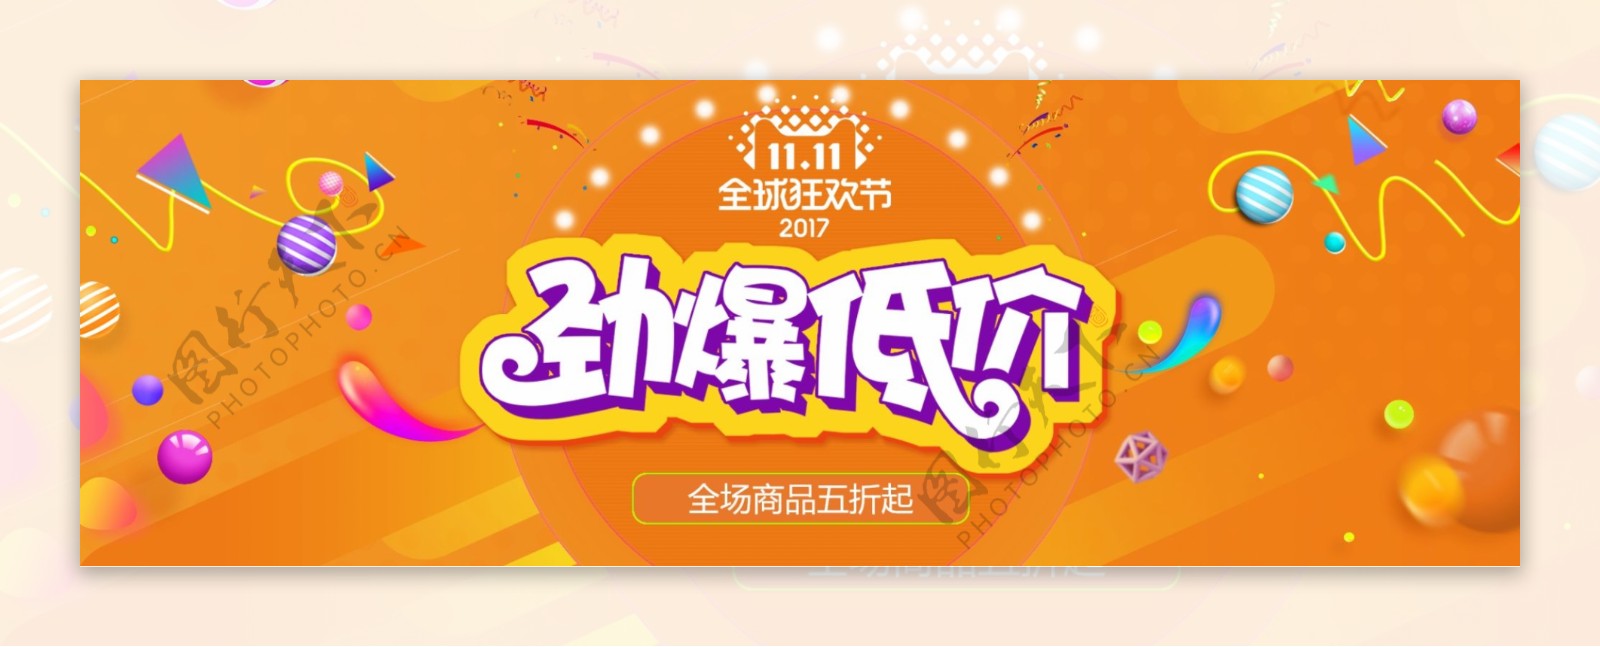 橘黄双十一双11促销淘宝海报banner